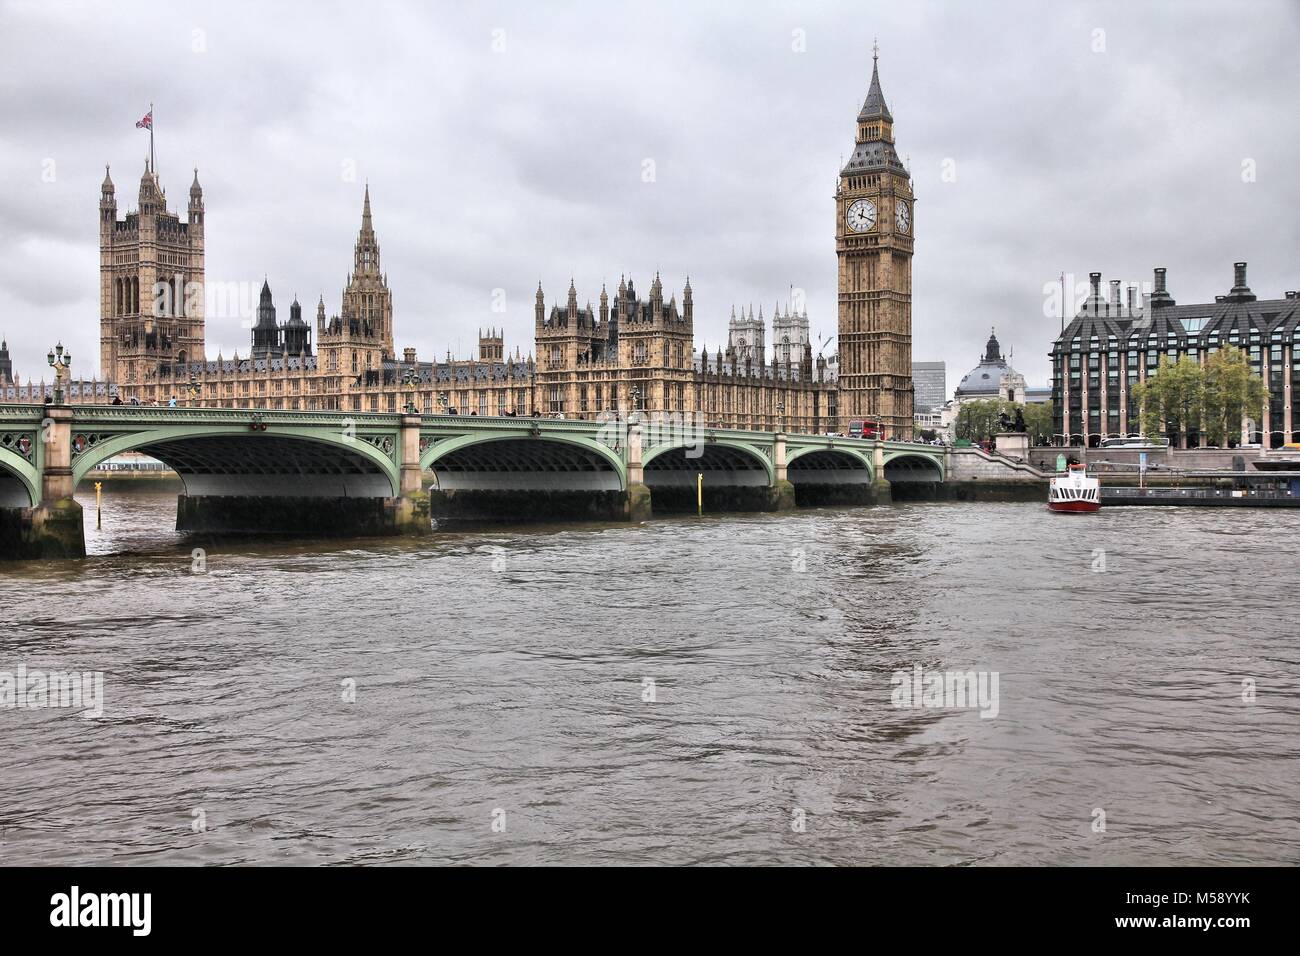 London, Regno Unito - giornata piovosa vista del Palazzo di Westminster (sede del parlamento) con il Big Ben clock tower e Victoria Tower. UNESCO World Heri Foto Stock